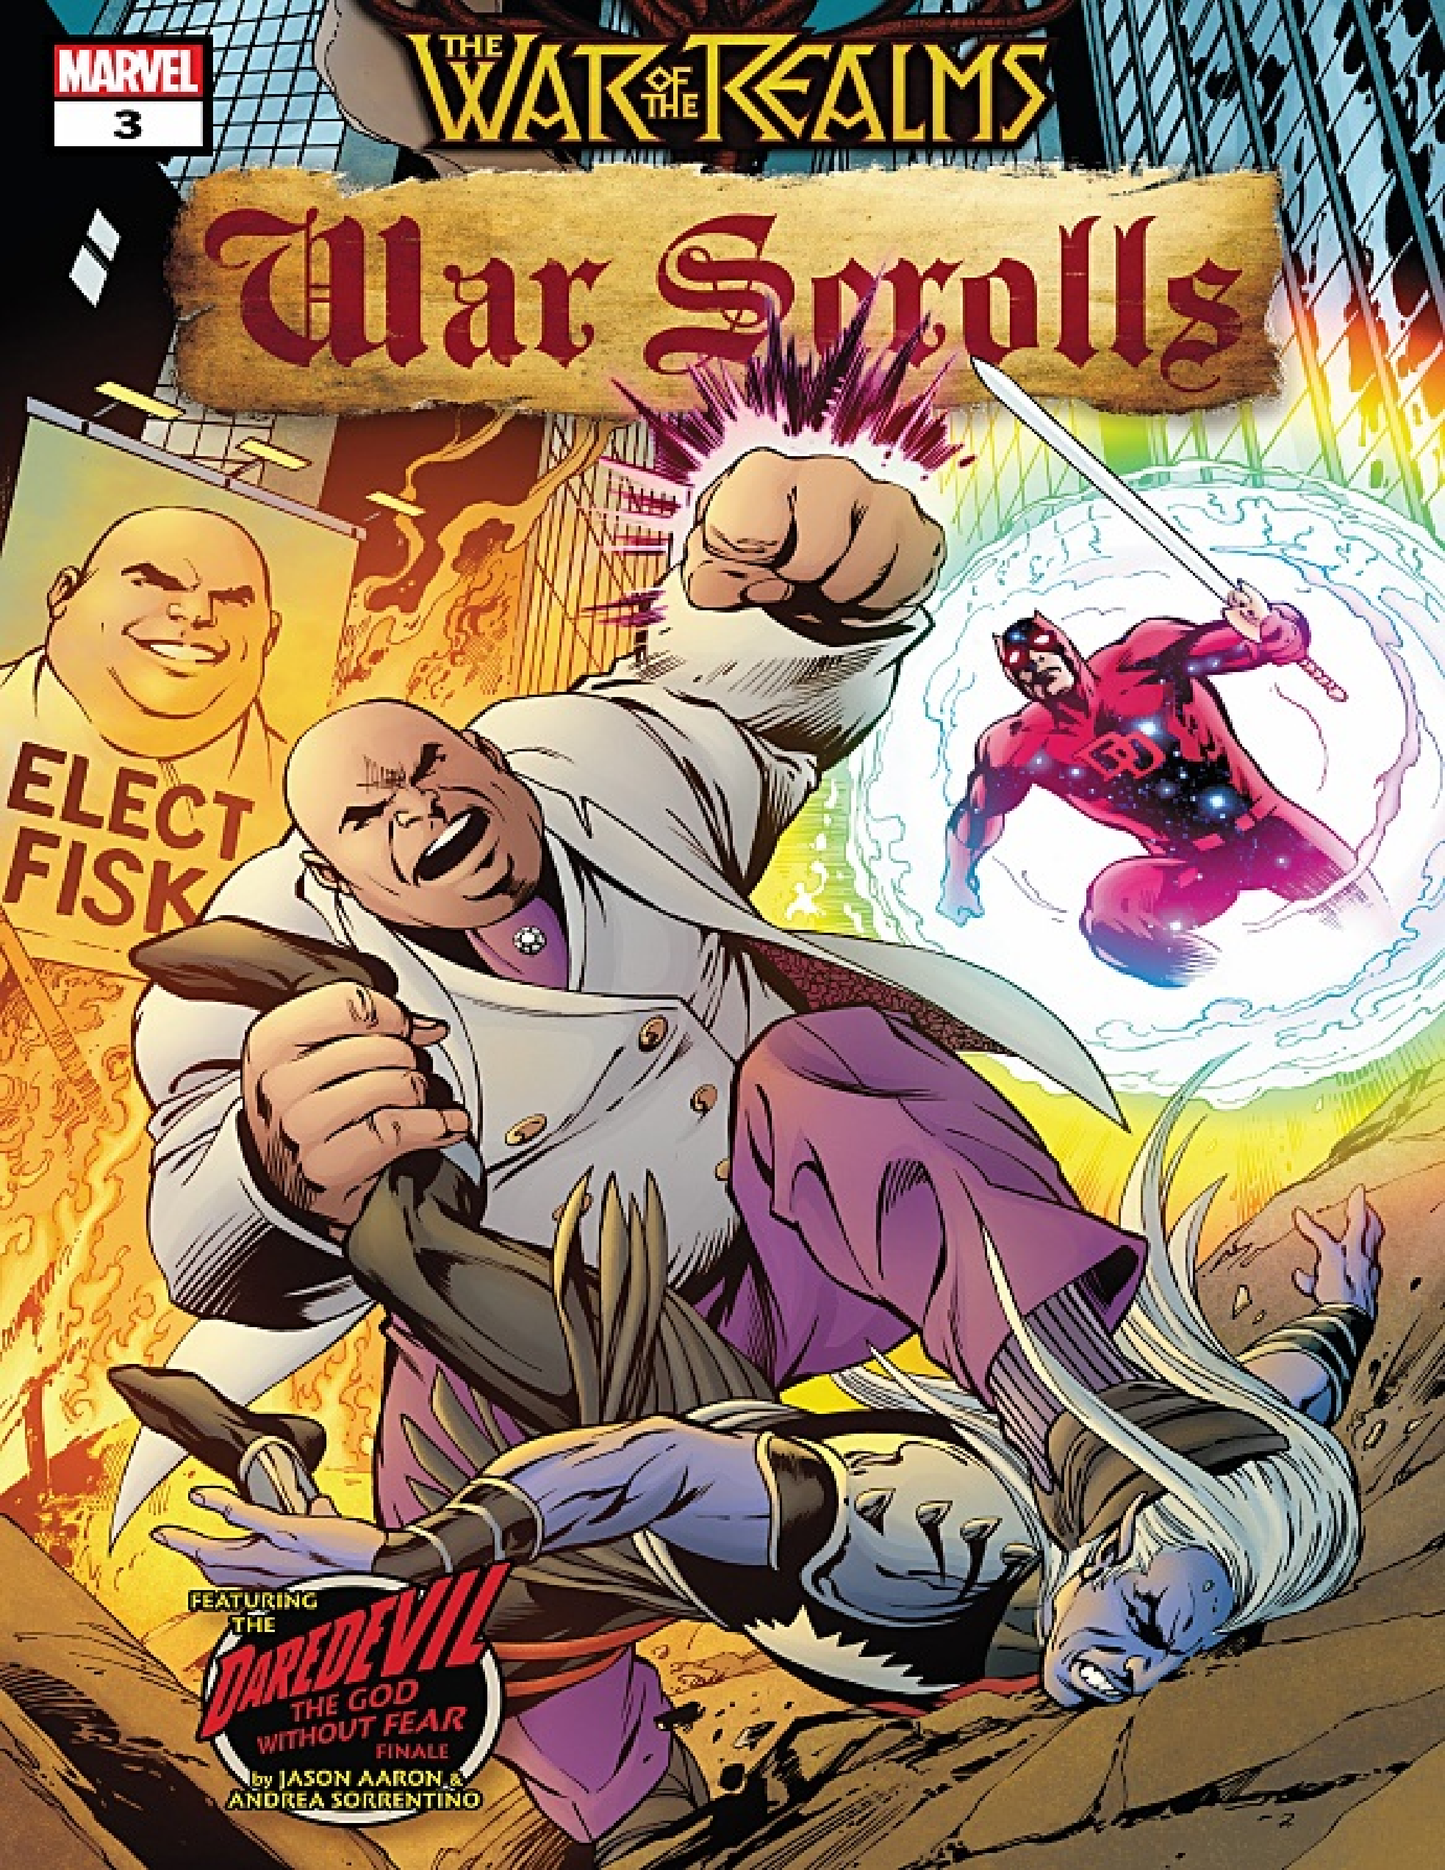 War of the Realms - War Scrolls | E-Series